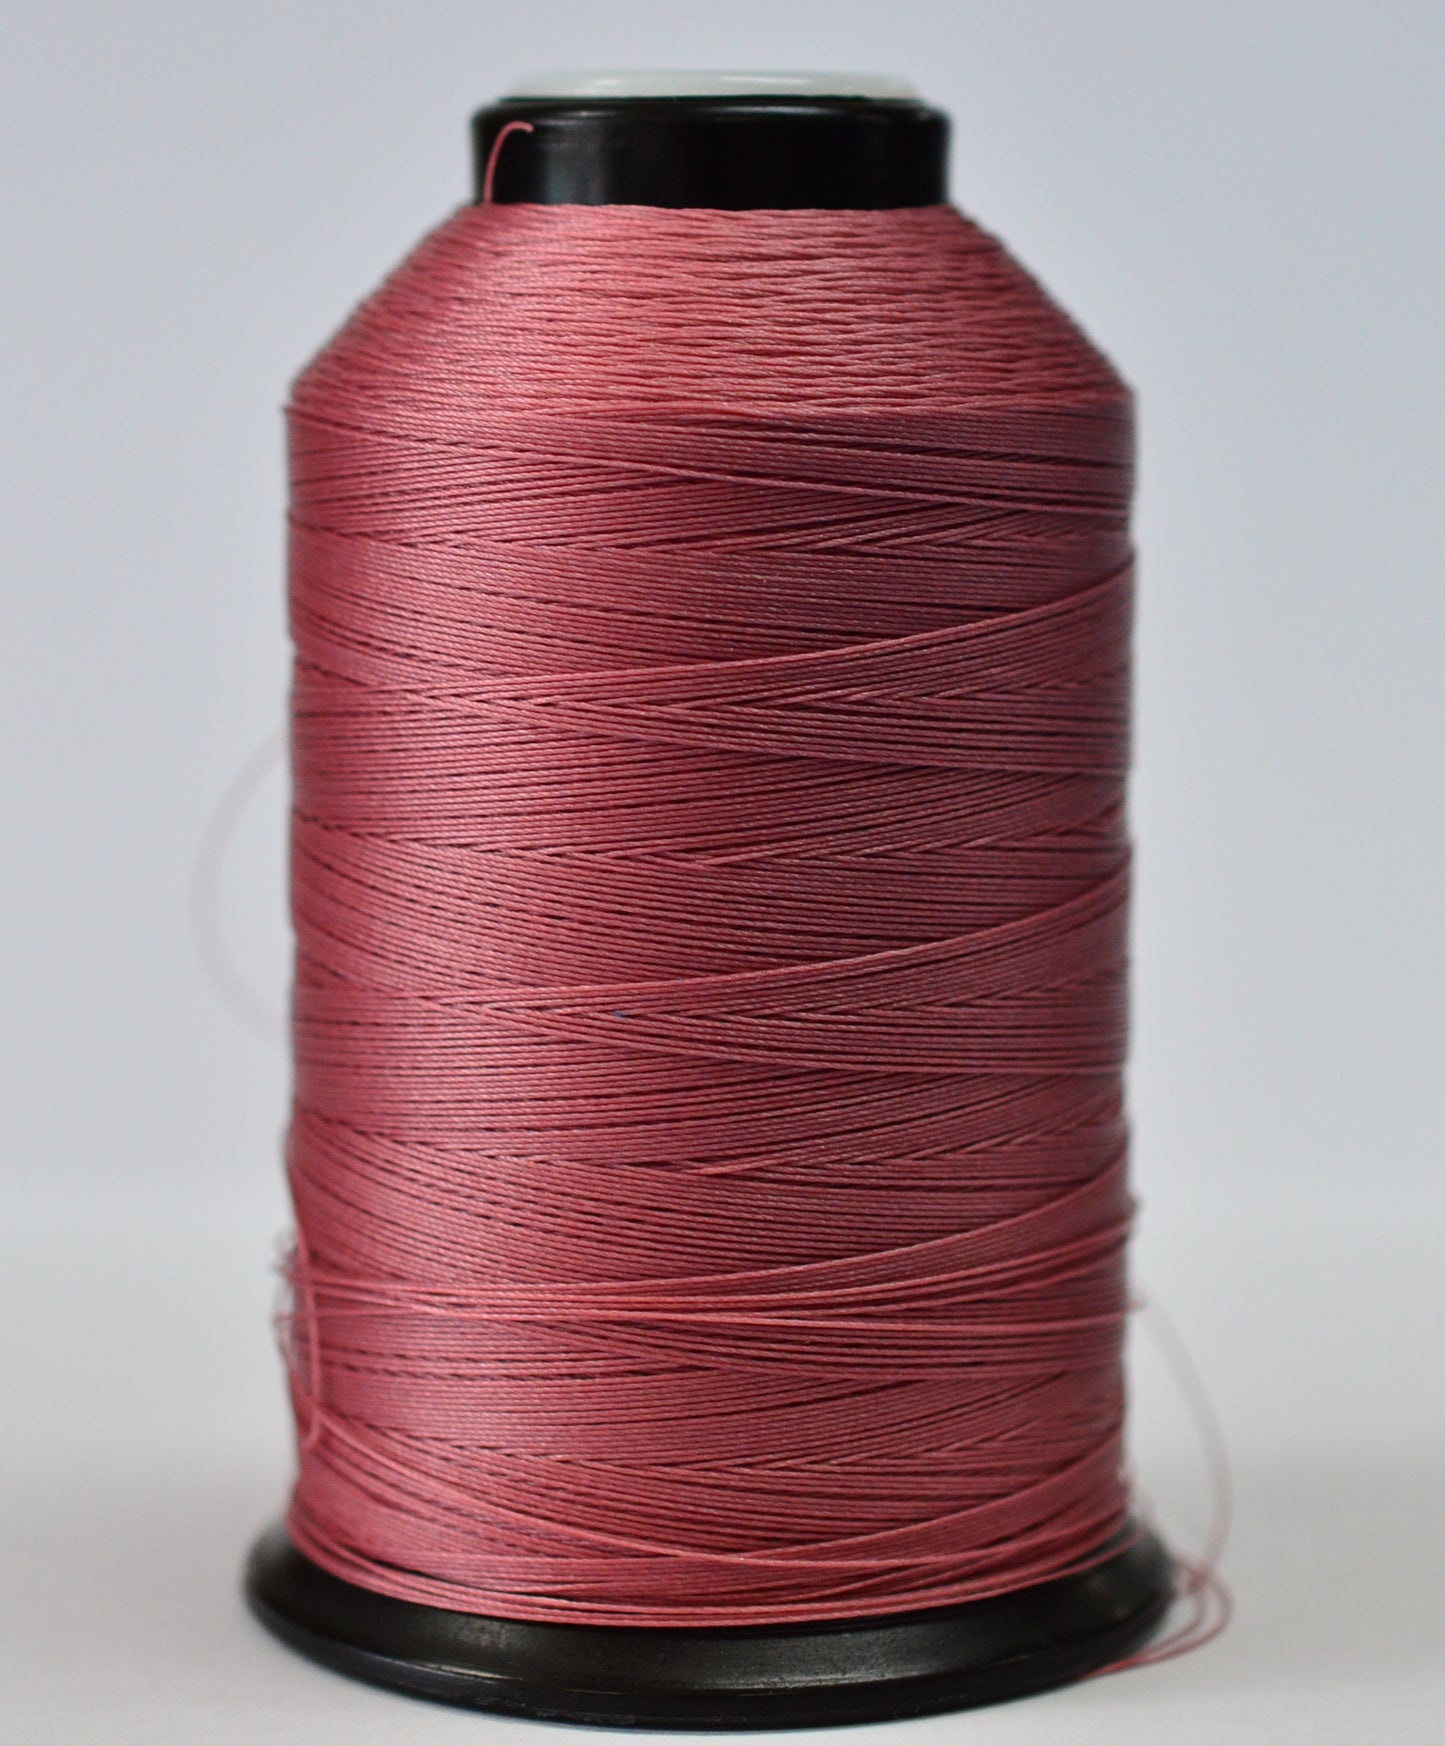 Sobie UV Outdoor Dark Rose Polyester thread bonded 4 oz roll